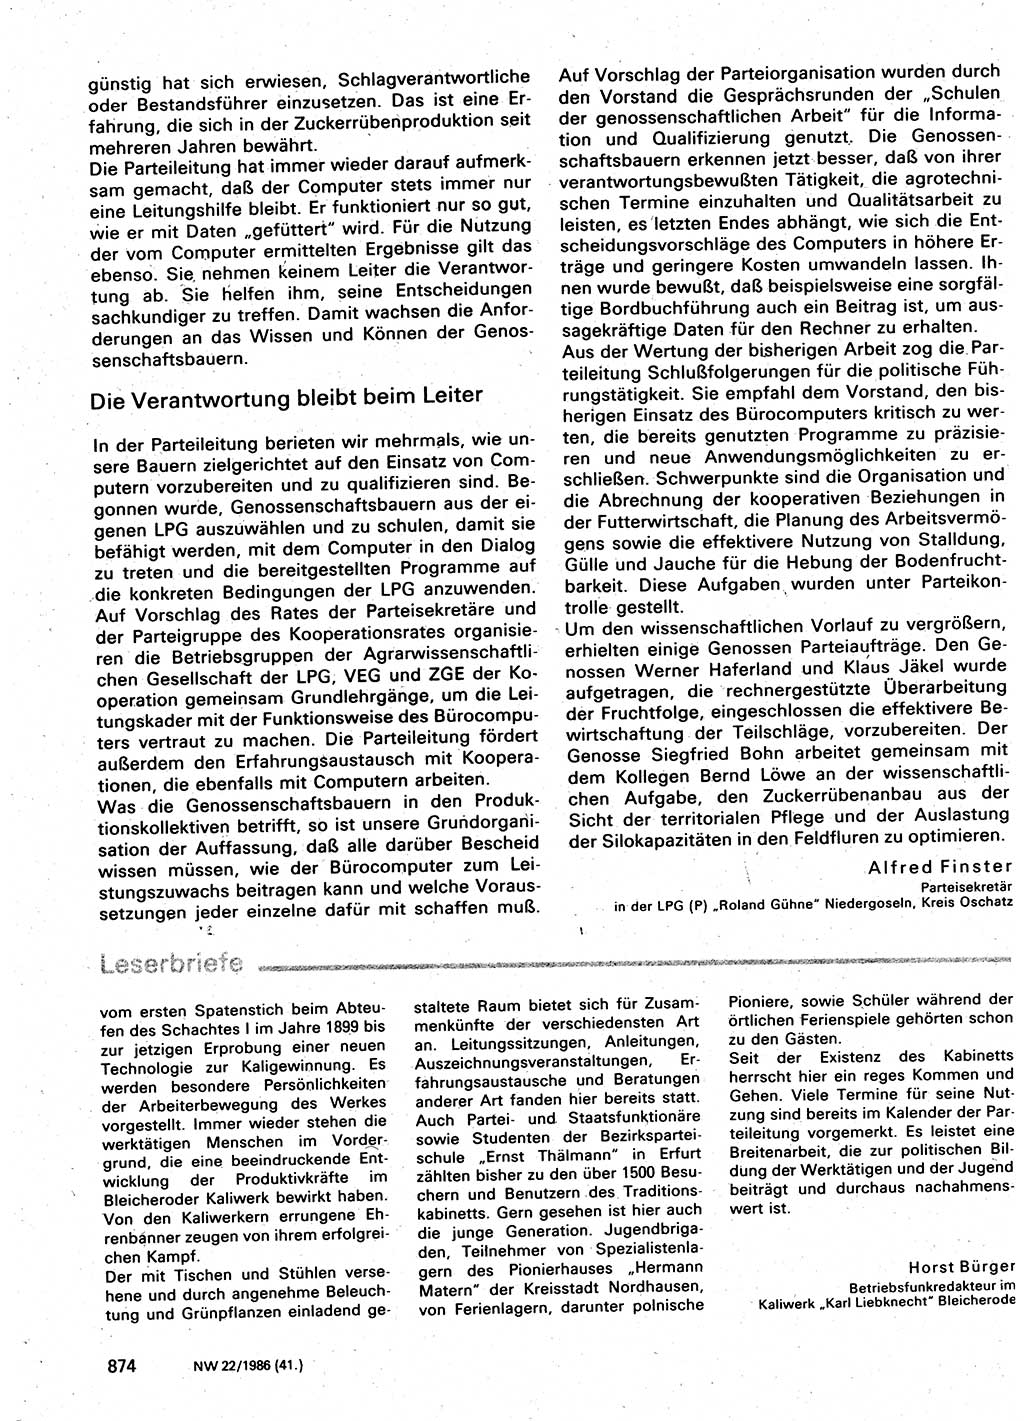 Neuer Weg (NW), Organ des Zentralkomitees (ZK) der SED (Sozialistische Einheitspartei Deutschlands) für Fragen des Parteilebens, 41. Jahrgang [Deutsche Demokratische Republik (DDR)] 1986, Seite 874 (NW ZK SED DDR 1986, S. 874)